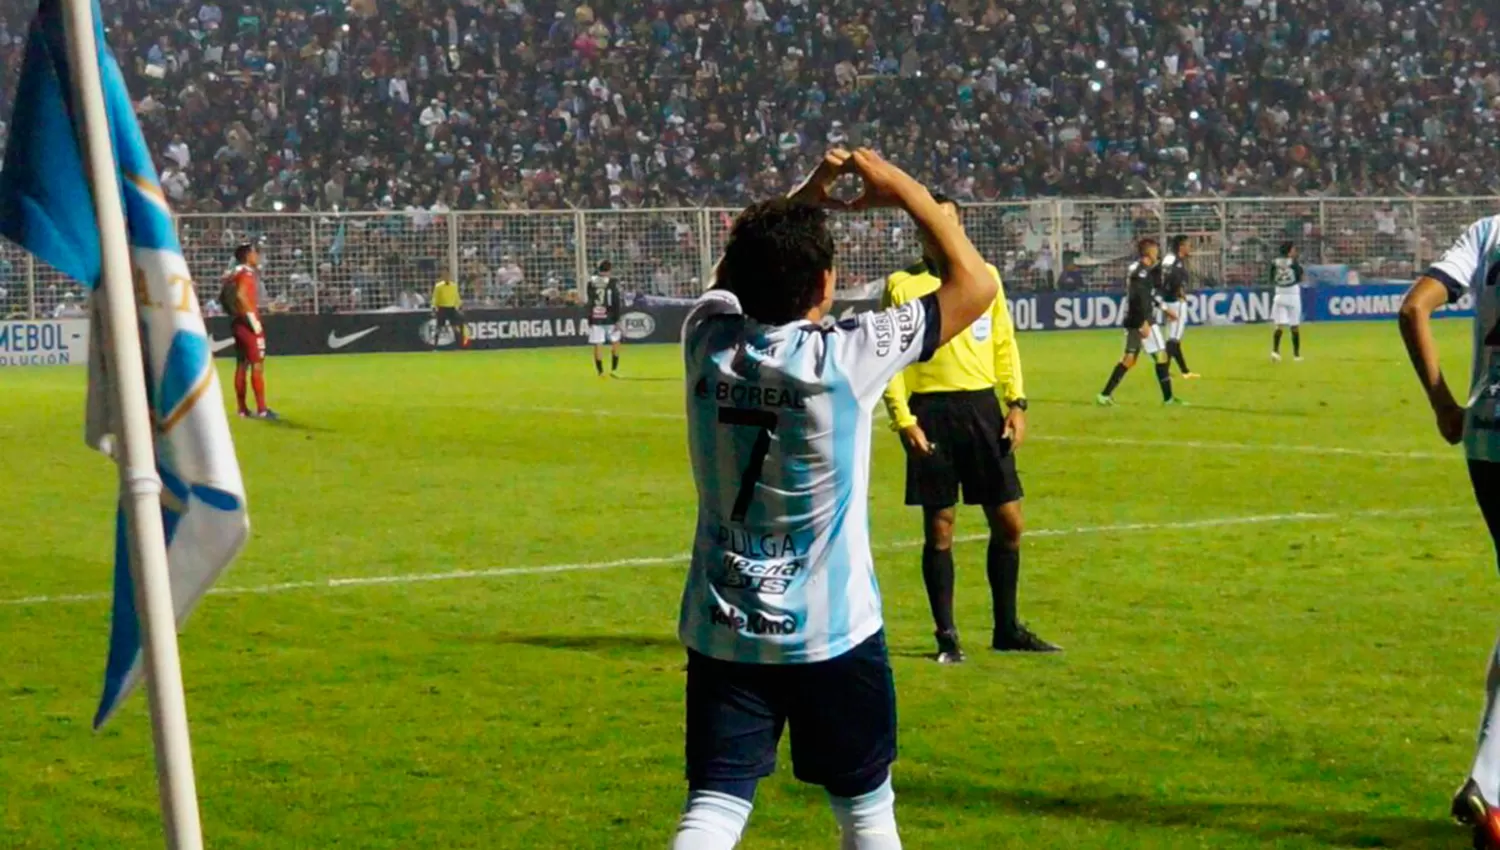 GOLEADOR. Rodríguez anotó un triplete y Atlético avanzó de ronda. (FOTO SOY DECANO)